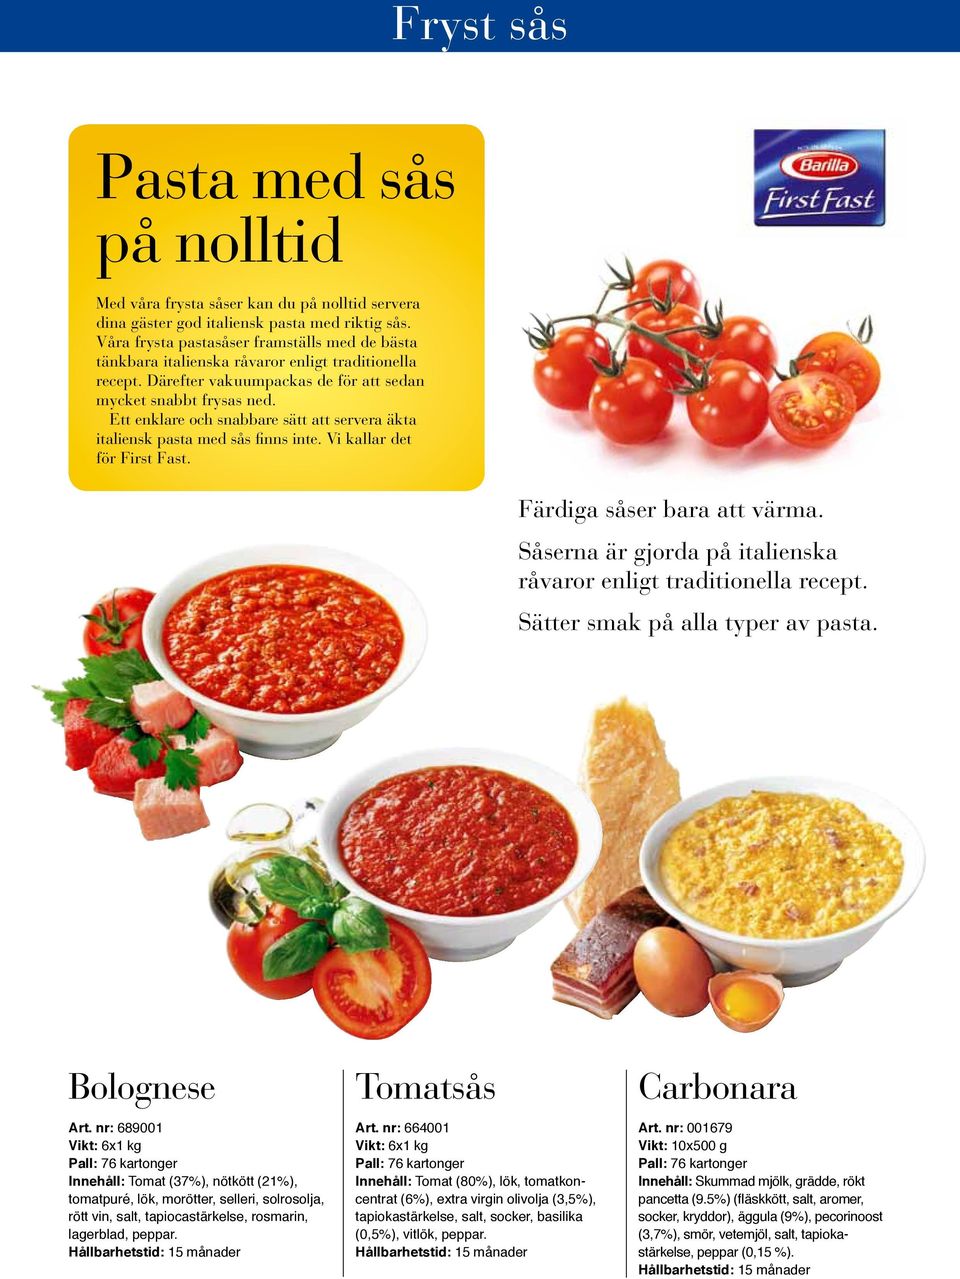 Ett enklare och snabbare sätt att servera äkta italiensk pasta med sås finns inte. Vi kallar det för First Fast. Färdiga såser bara att värma.